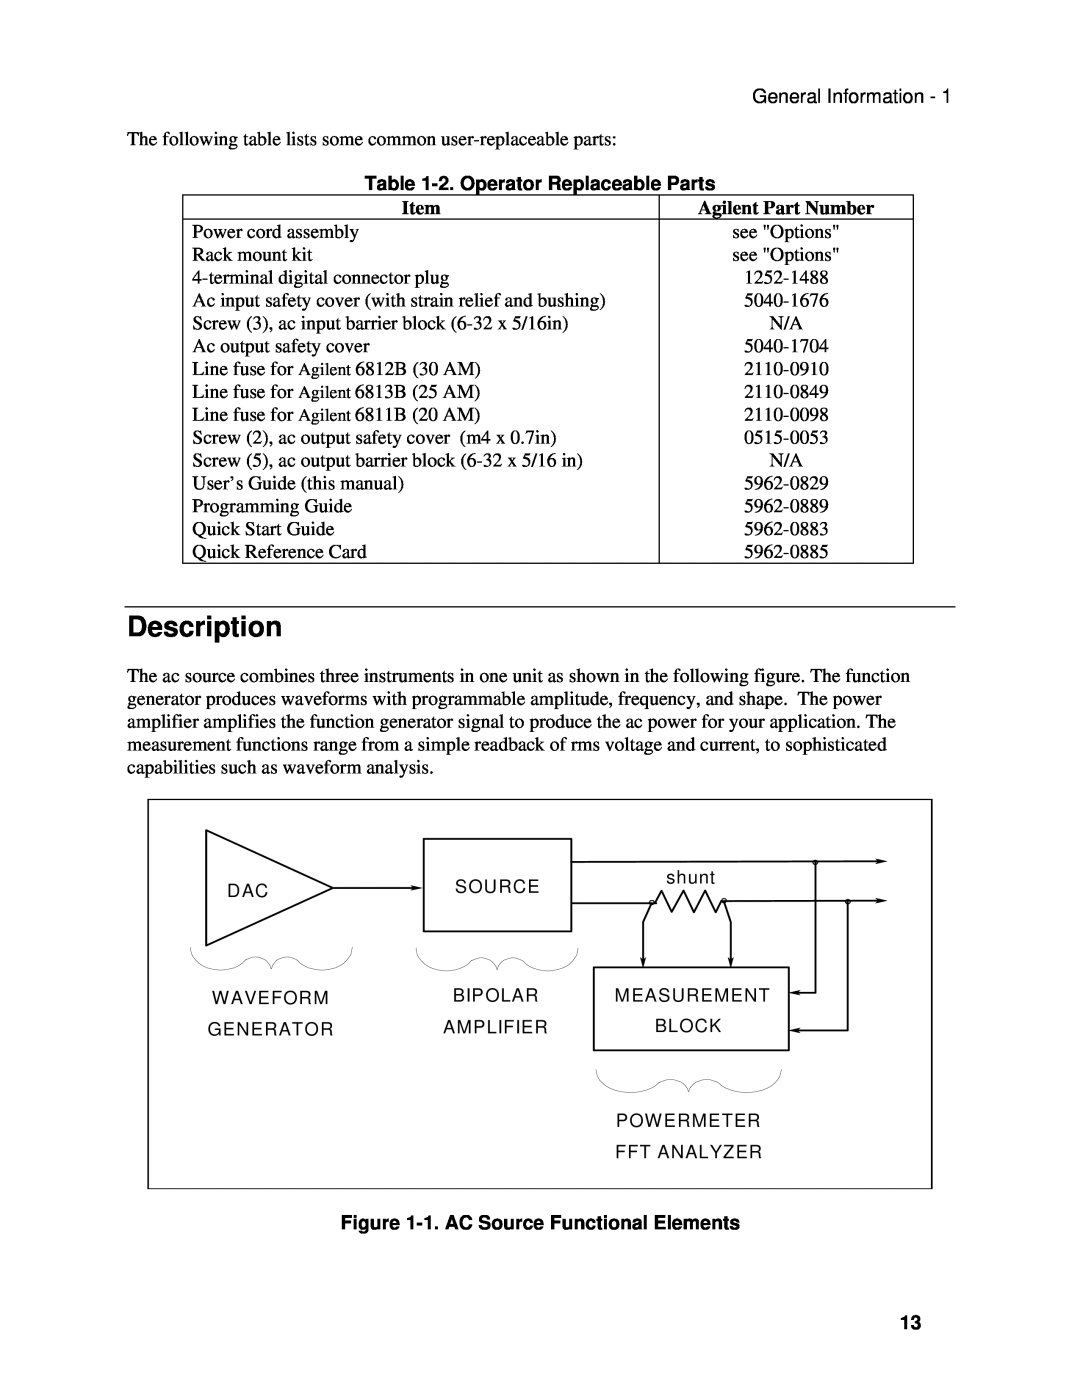 Agilent Technologies 6811B, 6813B, 6812B manual Description, 2. Operator Replaceable Parts, Agilent Part Number 